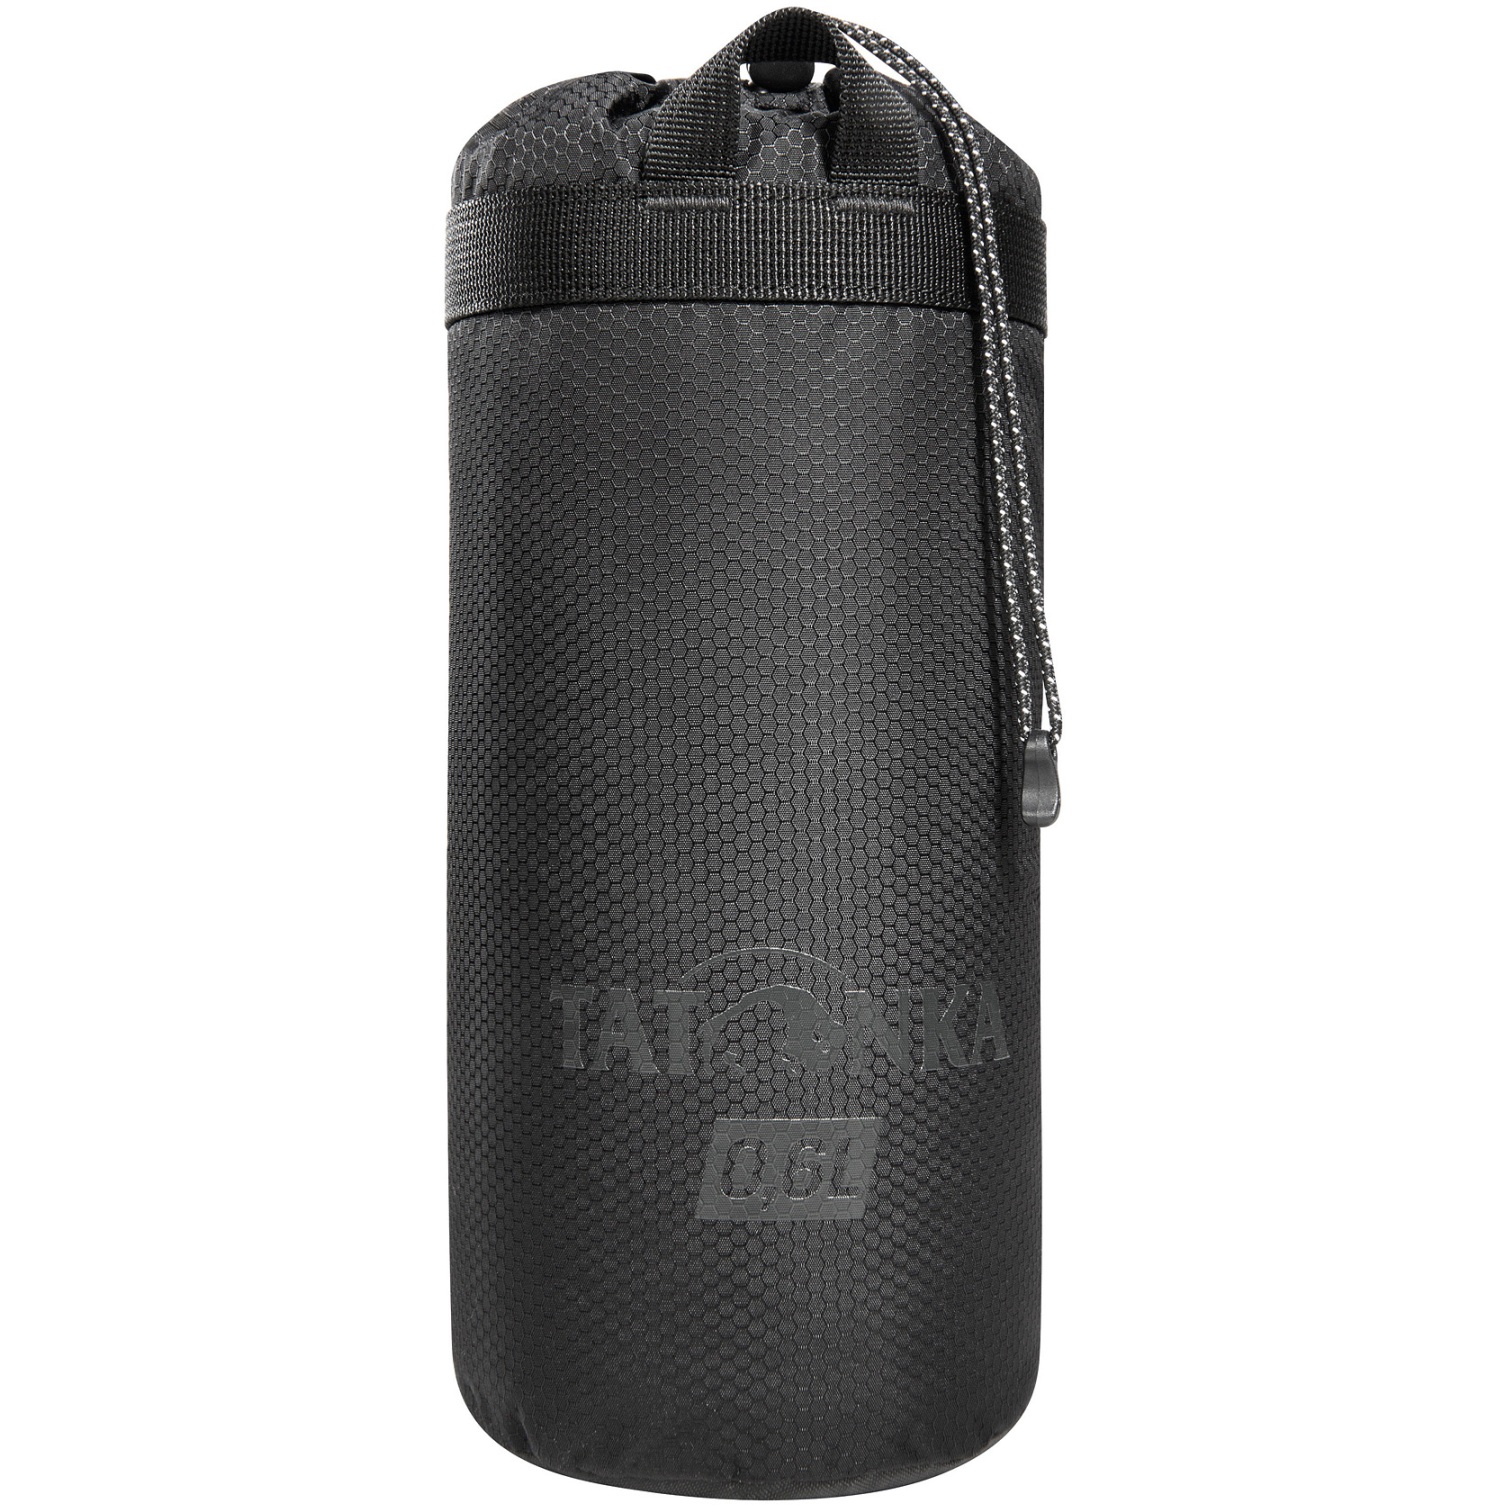 Produktbild von Tatonka Thermo Bottle Cover 0,6L Isolierhülle - schwarz